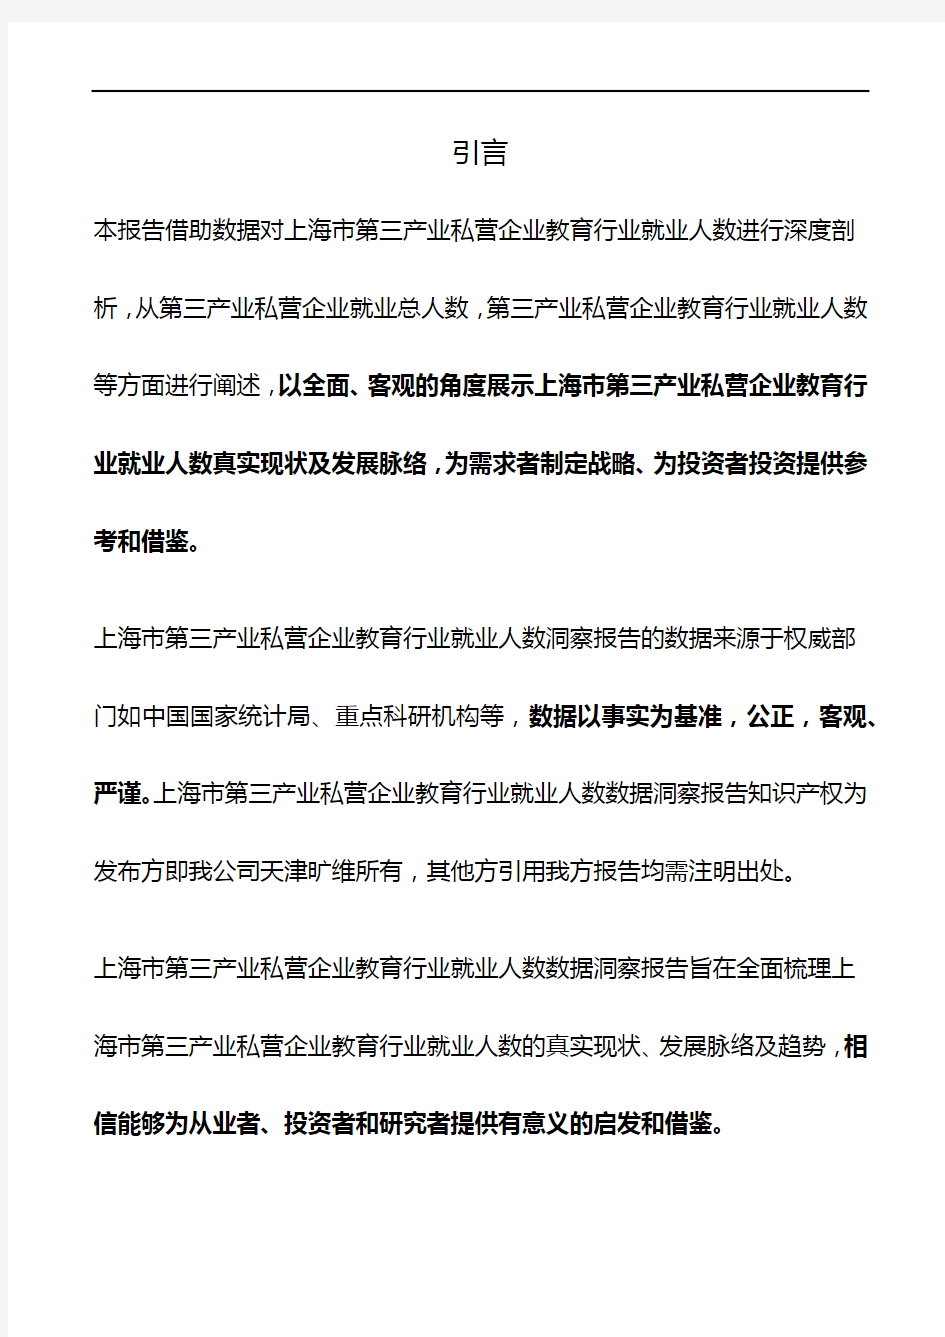 上海市第三产业私营企业教育行业就业人数3年数据洞察报告2019版